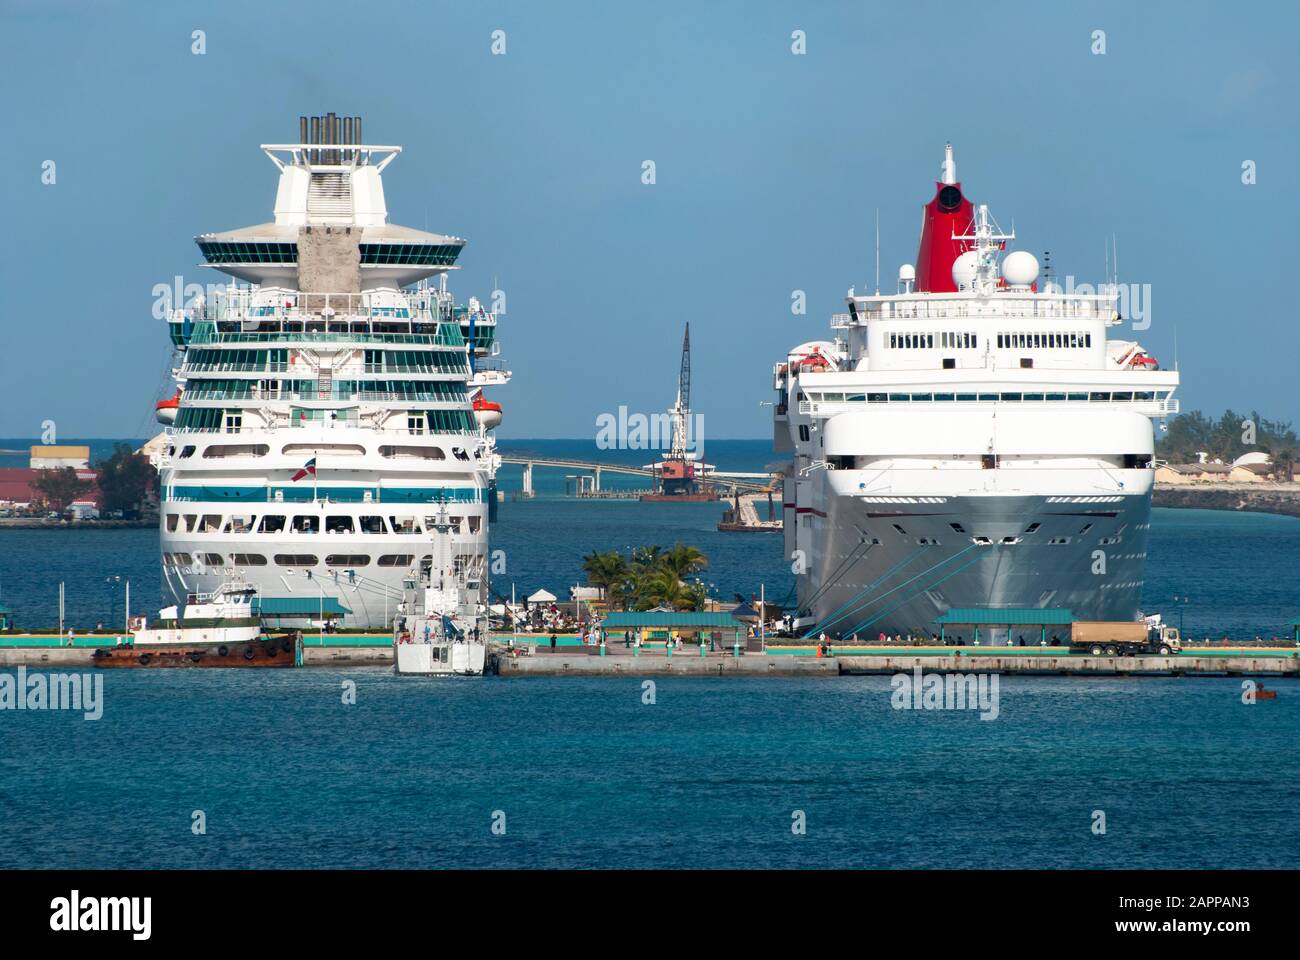 La vue du matin de deux grands paquebots de croisière amarrés dans le port de Nassau (Bahamas). Banque D'Images